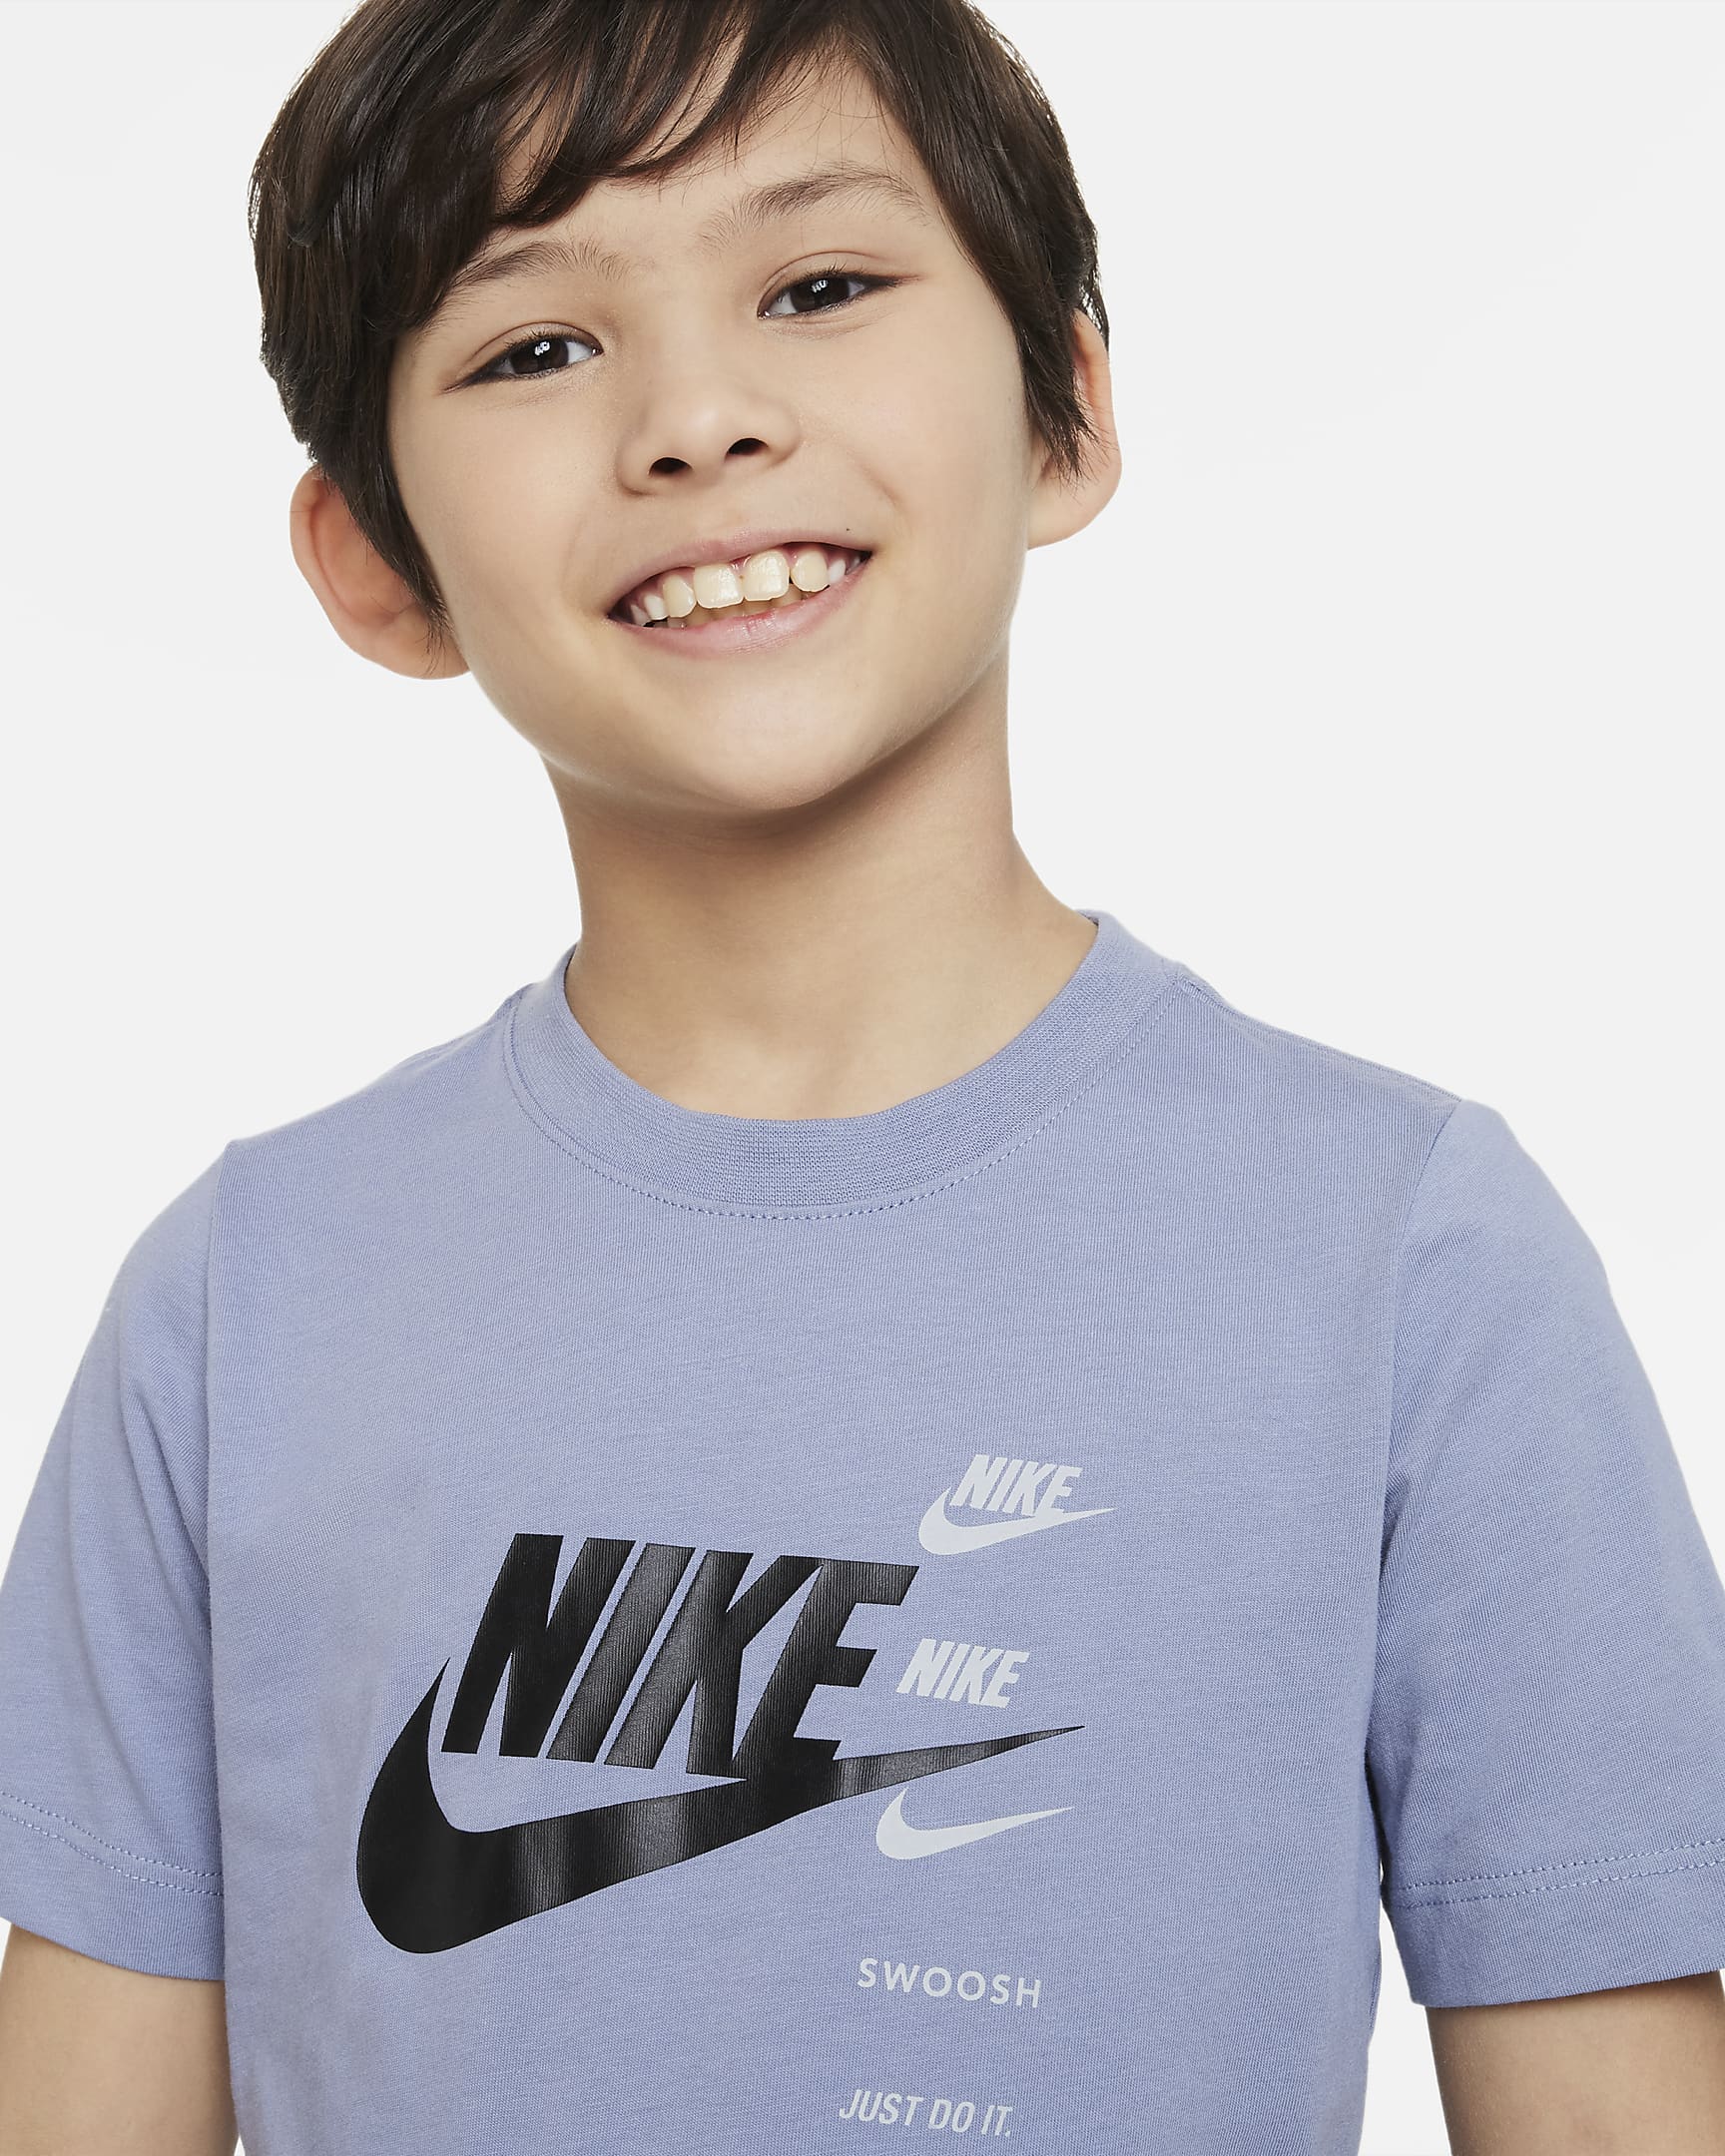 Nike Sportswear Standard Issue Older Kids' (Boys') T-shirt. Nike HU